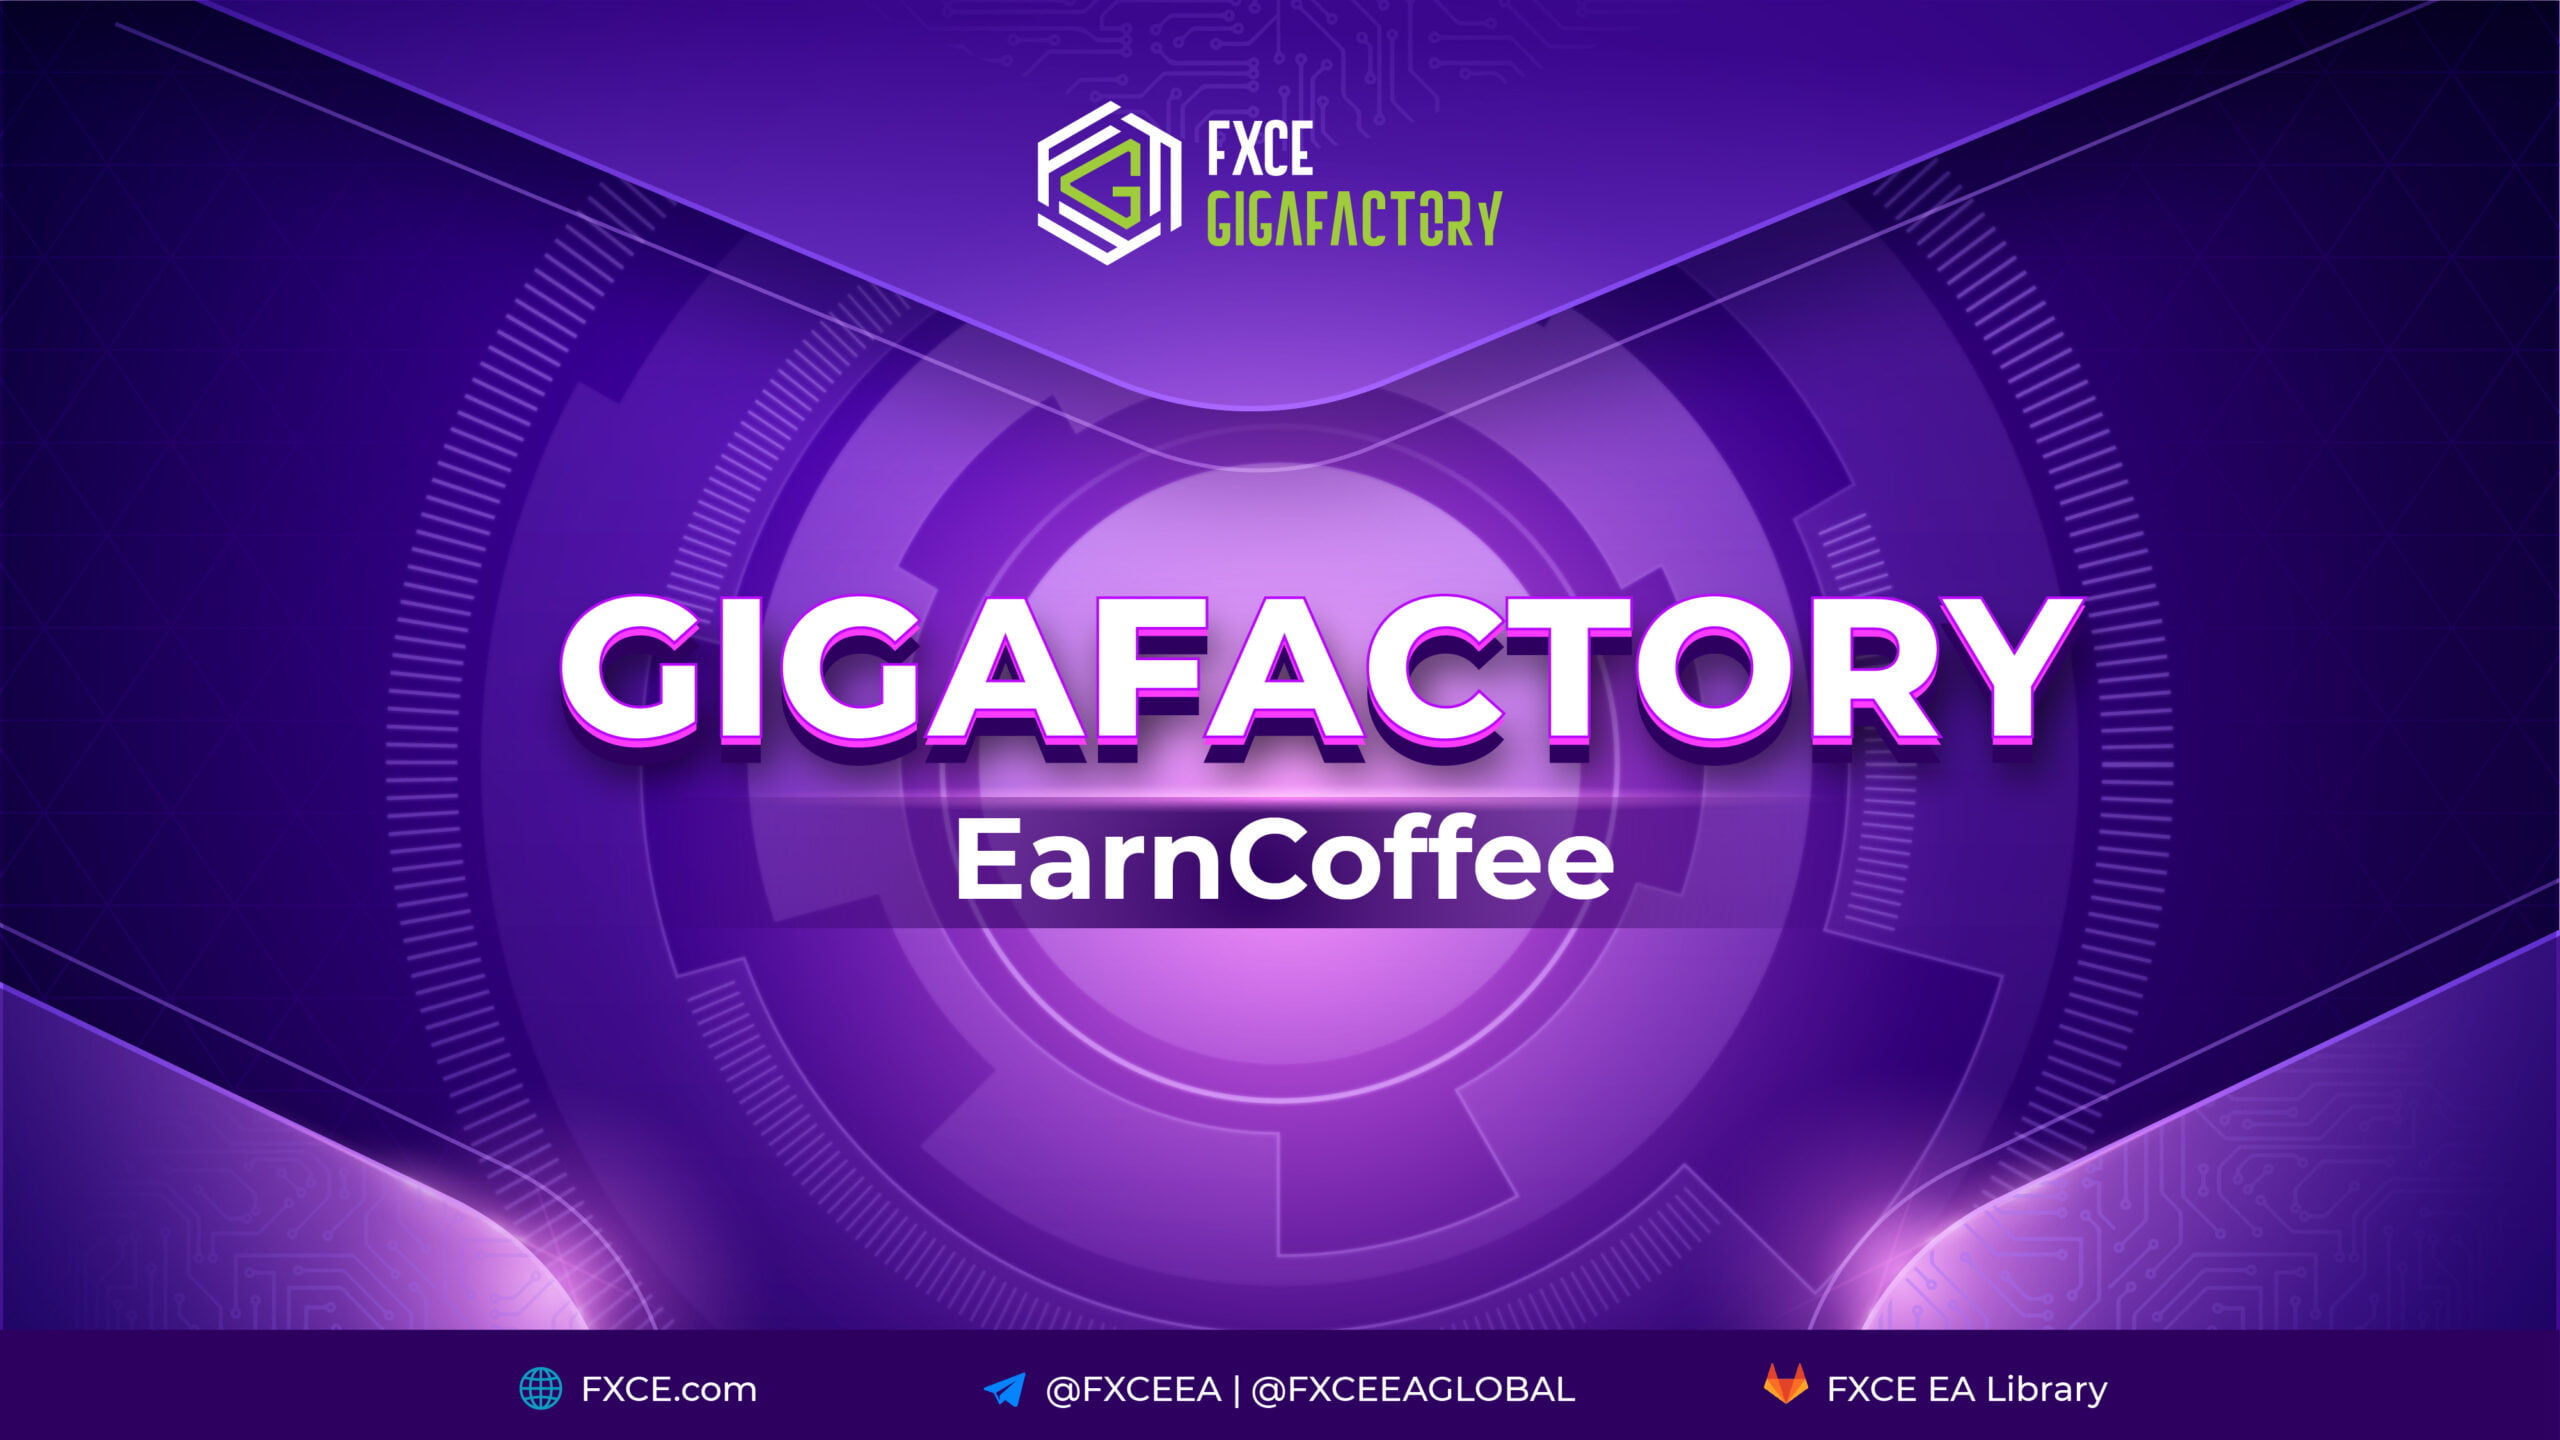 FXCE GigaFactory EarnCoffee 1.0 là gì?